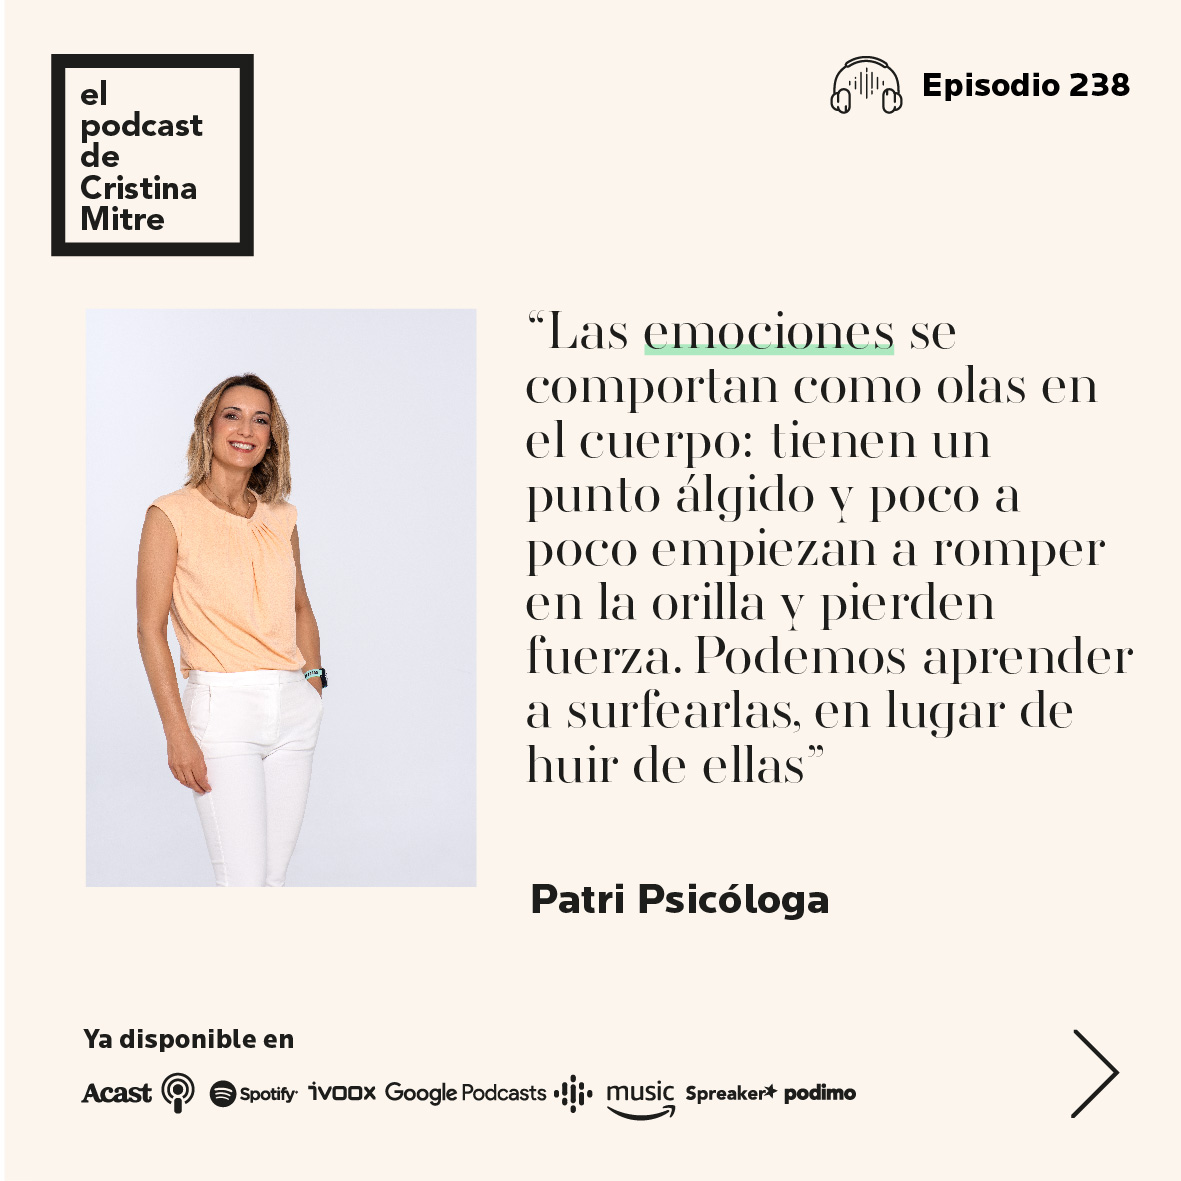 El podcast de Cristina Mitre Patri Psicologa emociones